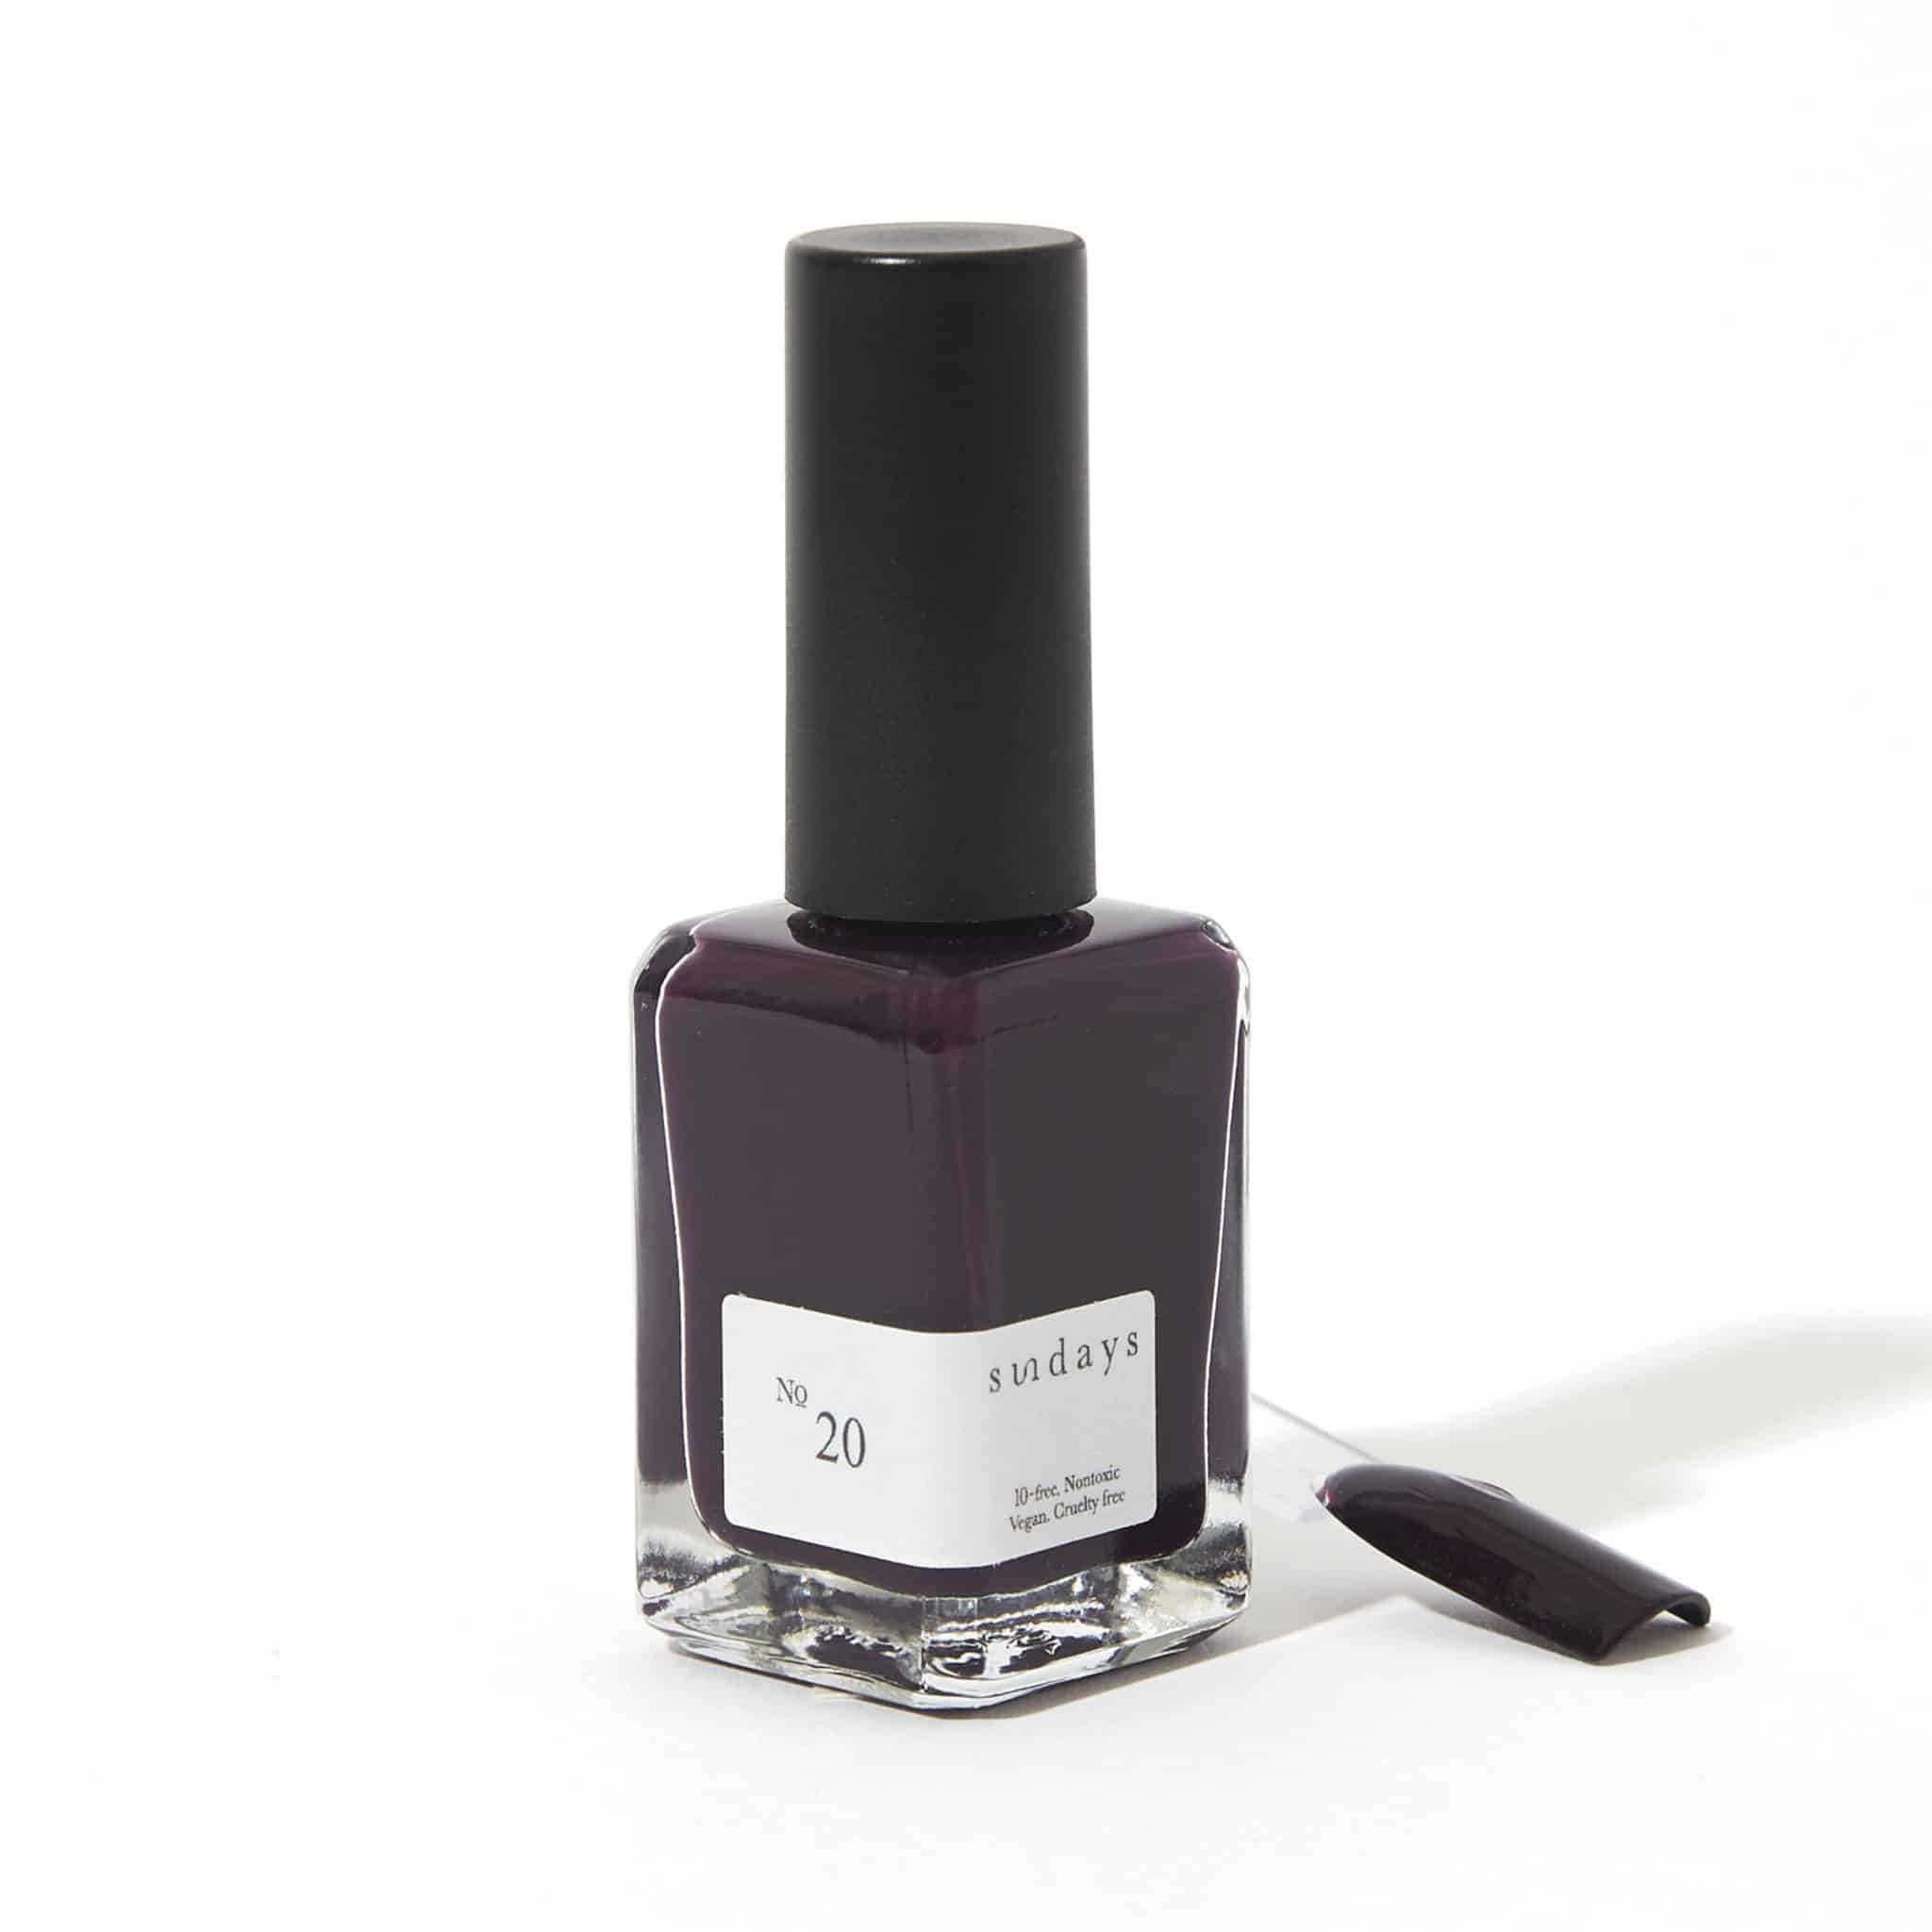 Non-toxic nail polish in deep purple